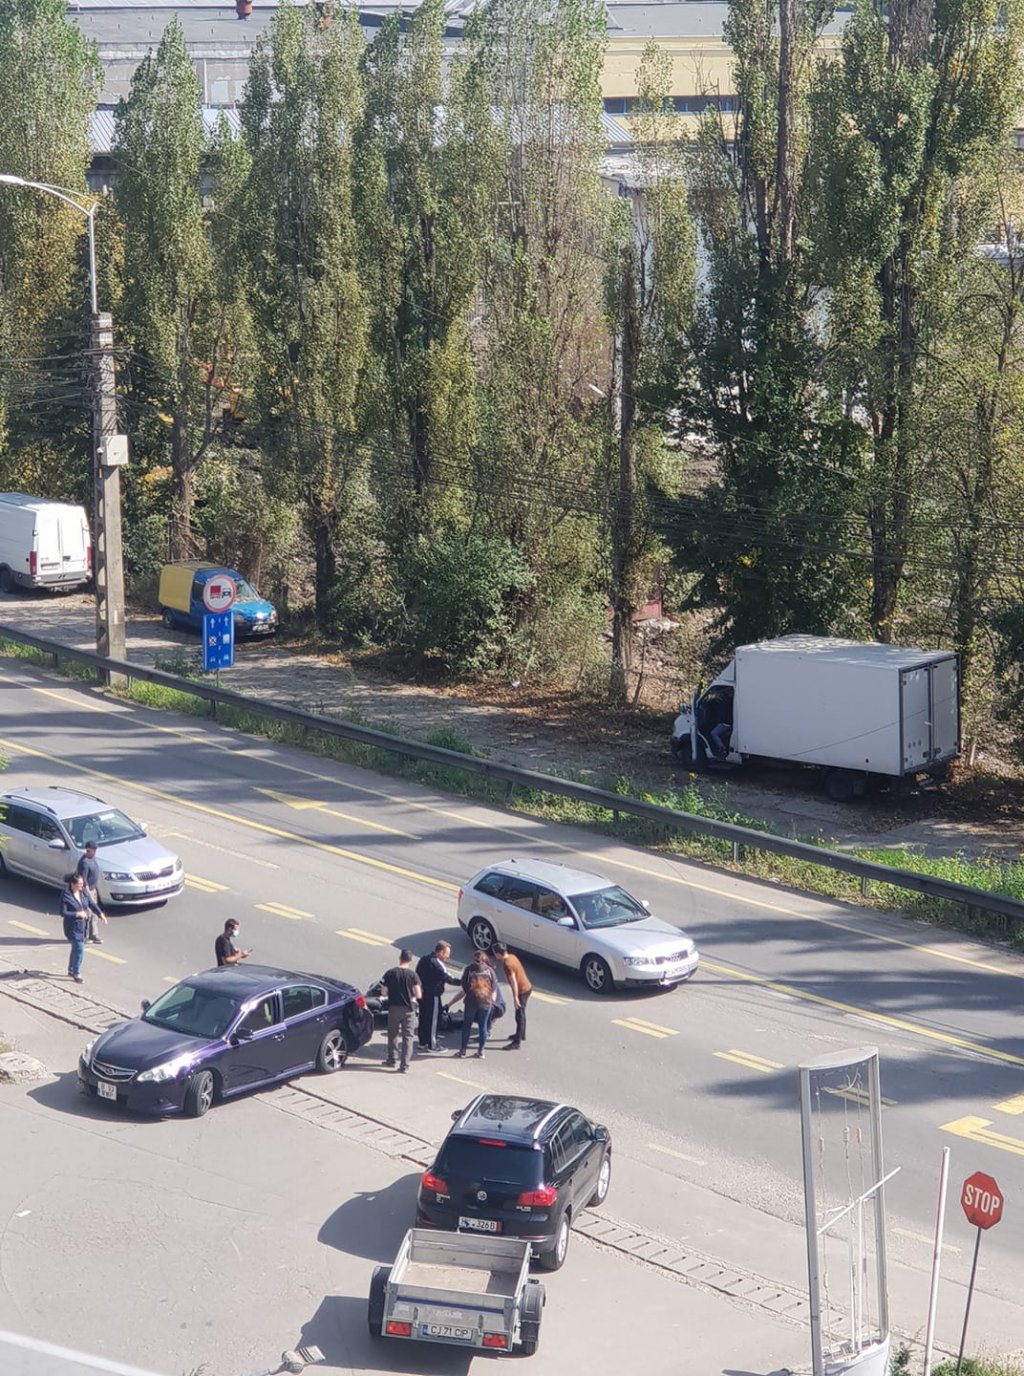 Doi motocicliști, loviți de mașini la Cluj